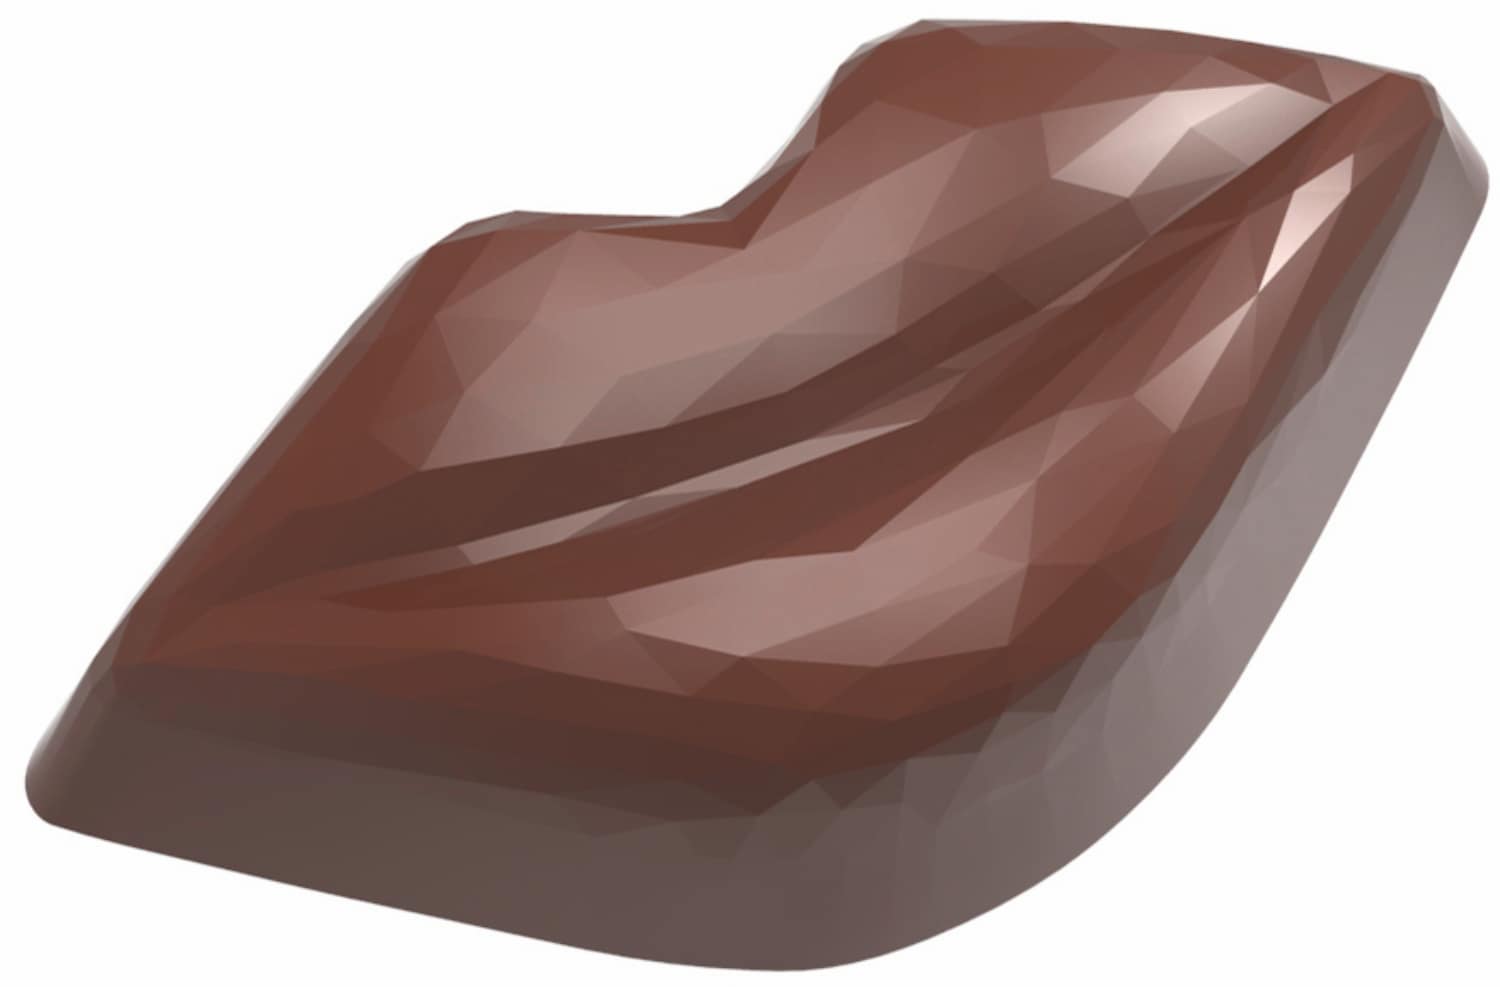 Schokoladenform "Kussmund" 421937 421937